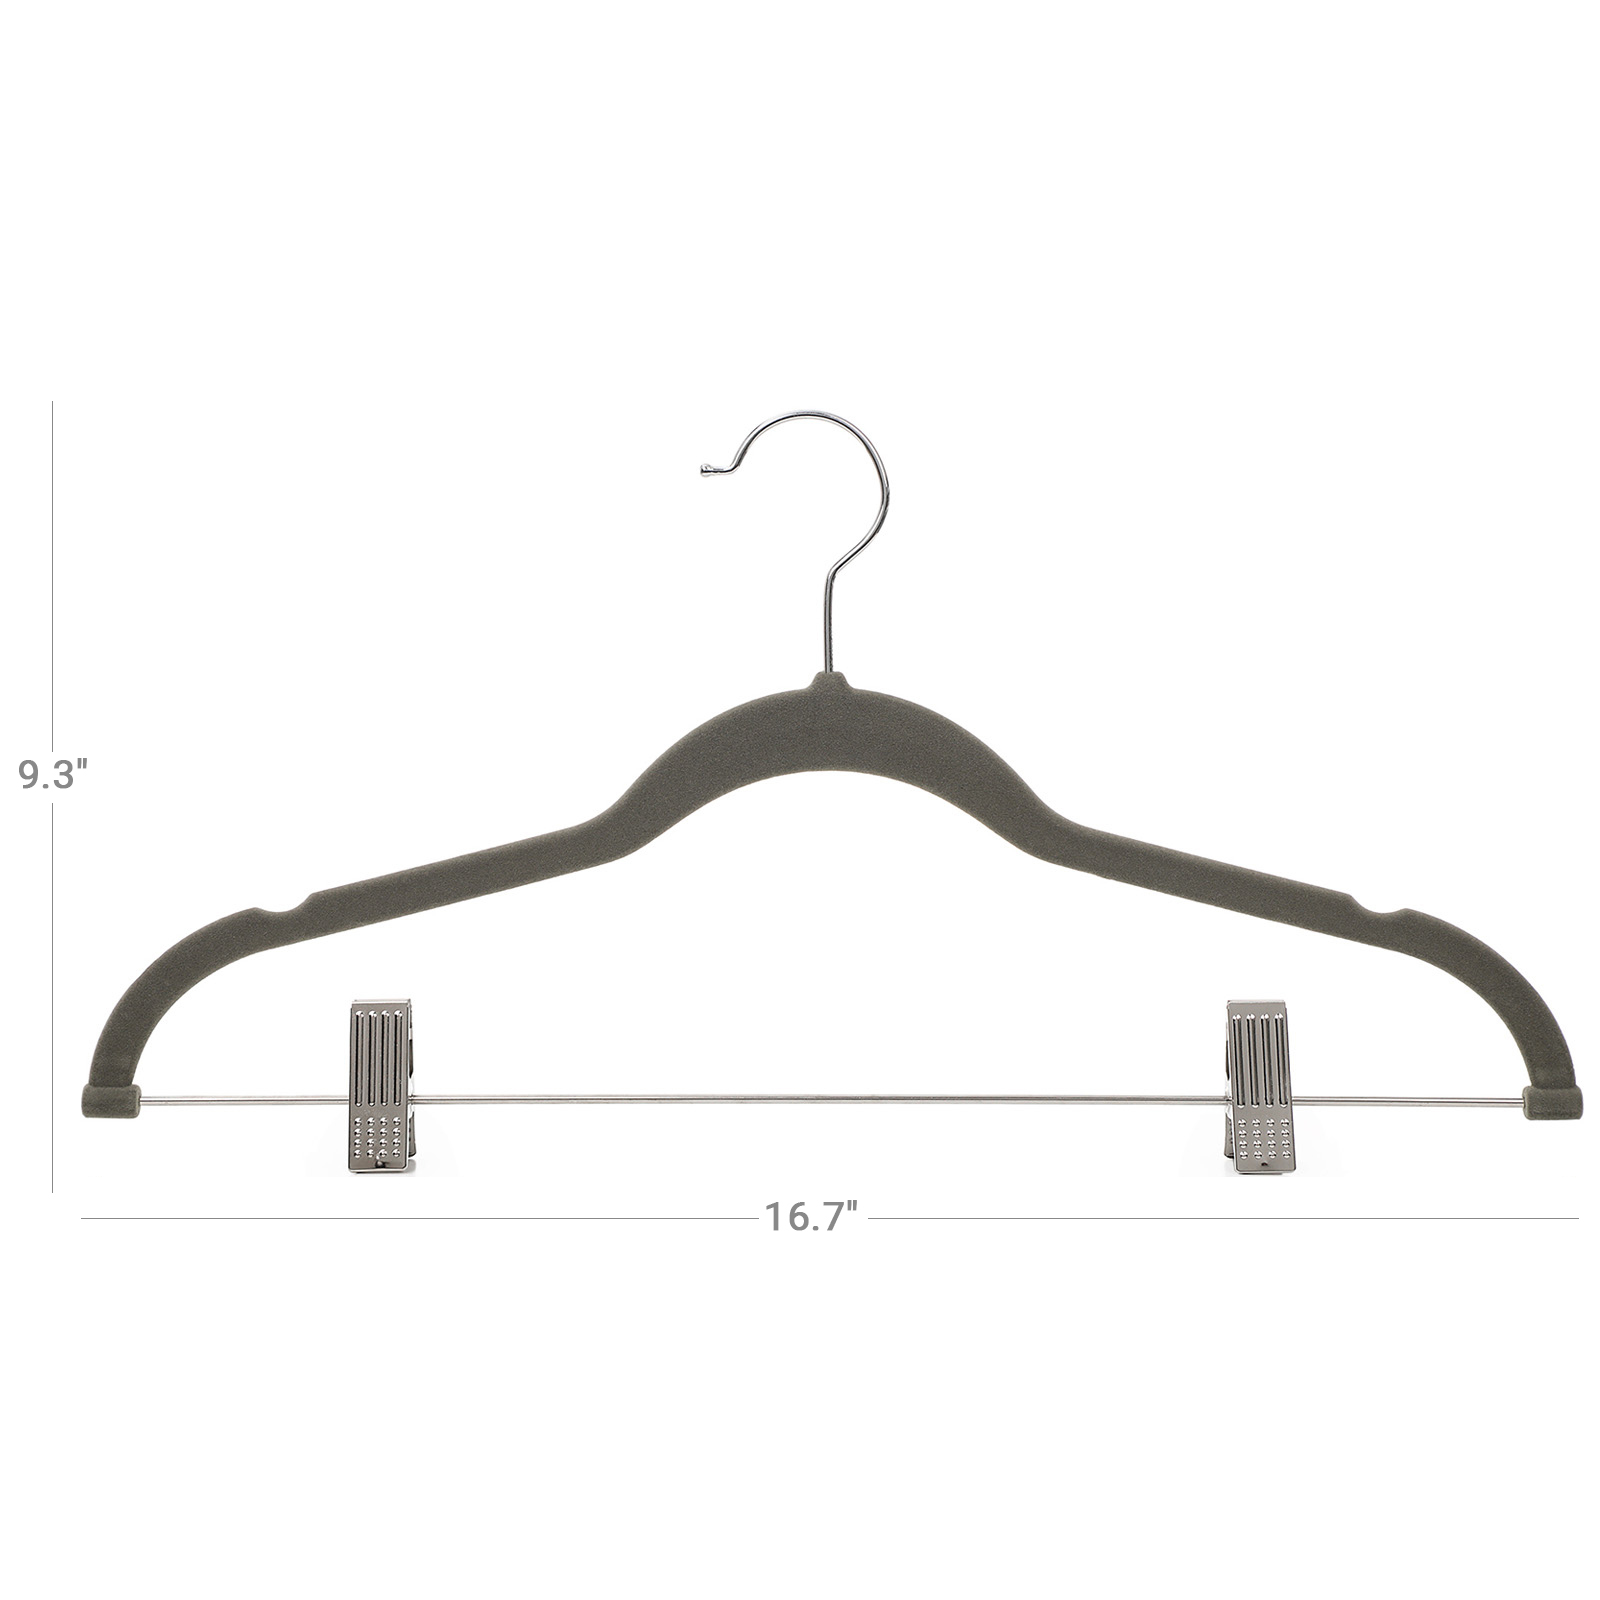 Gray Velvet Trousers Hangers - Trousers Hangers | SONGMICS